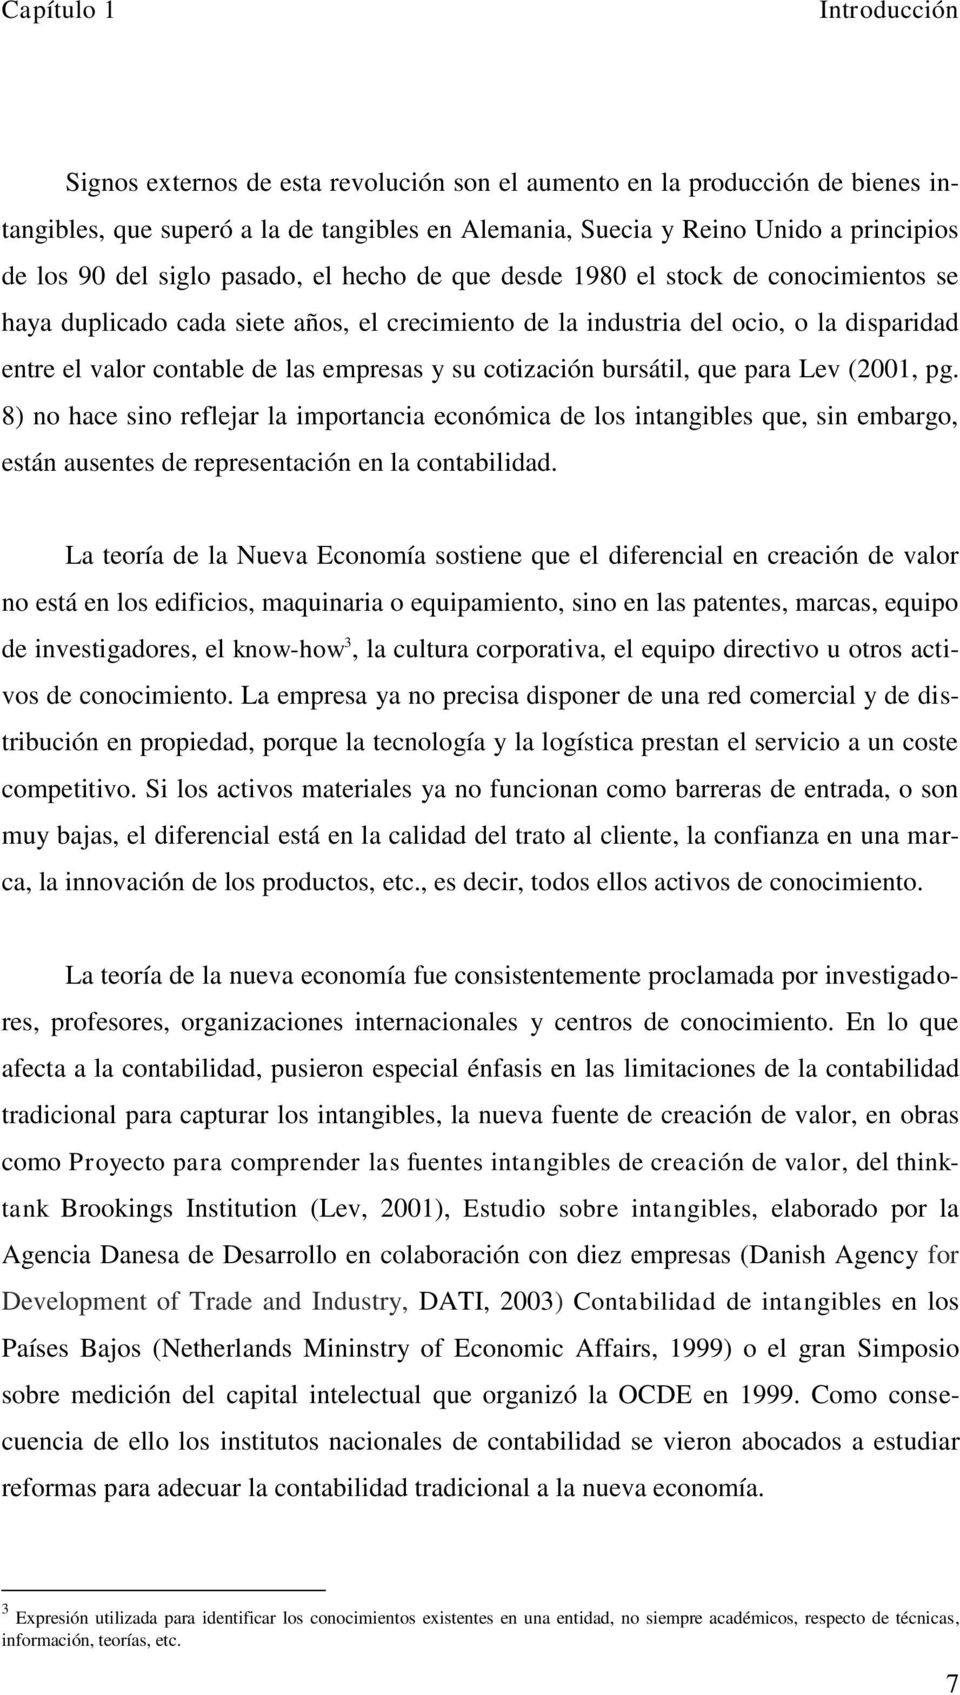 empresas y su cotización bursátil, que para Lev (2001, pg. 8) no hace sino reflejar la importancia económica de los intangibles que, sin embargo, están ausentes de representación en la contabilidad.